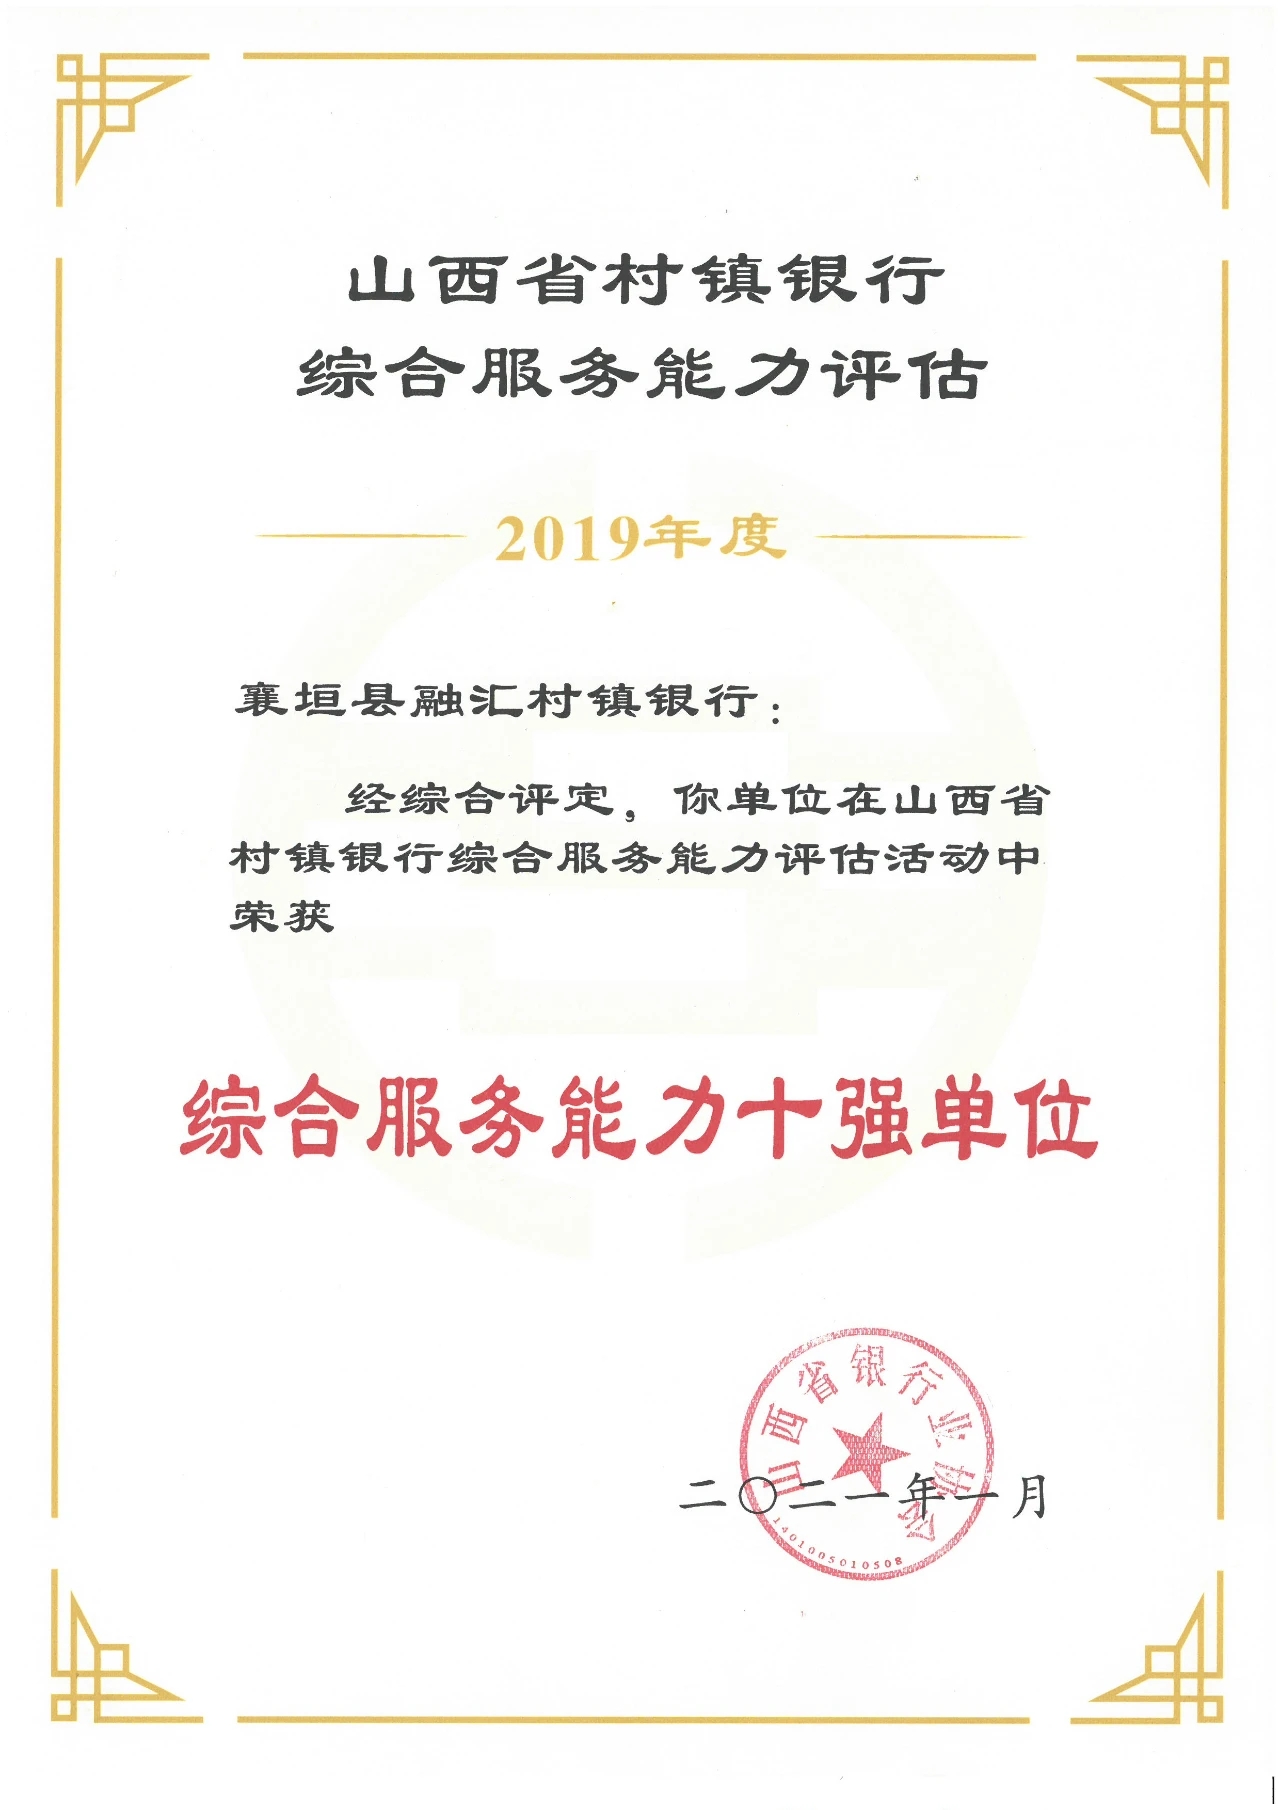 2021年1月 荣获“山西省村镇银行综合服务能力十强单位”荣誉称号